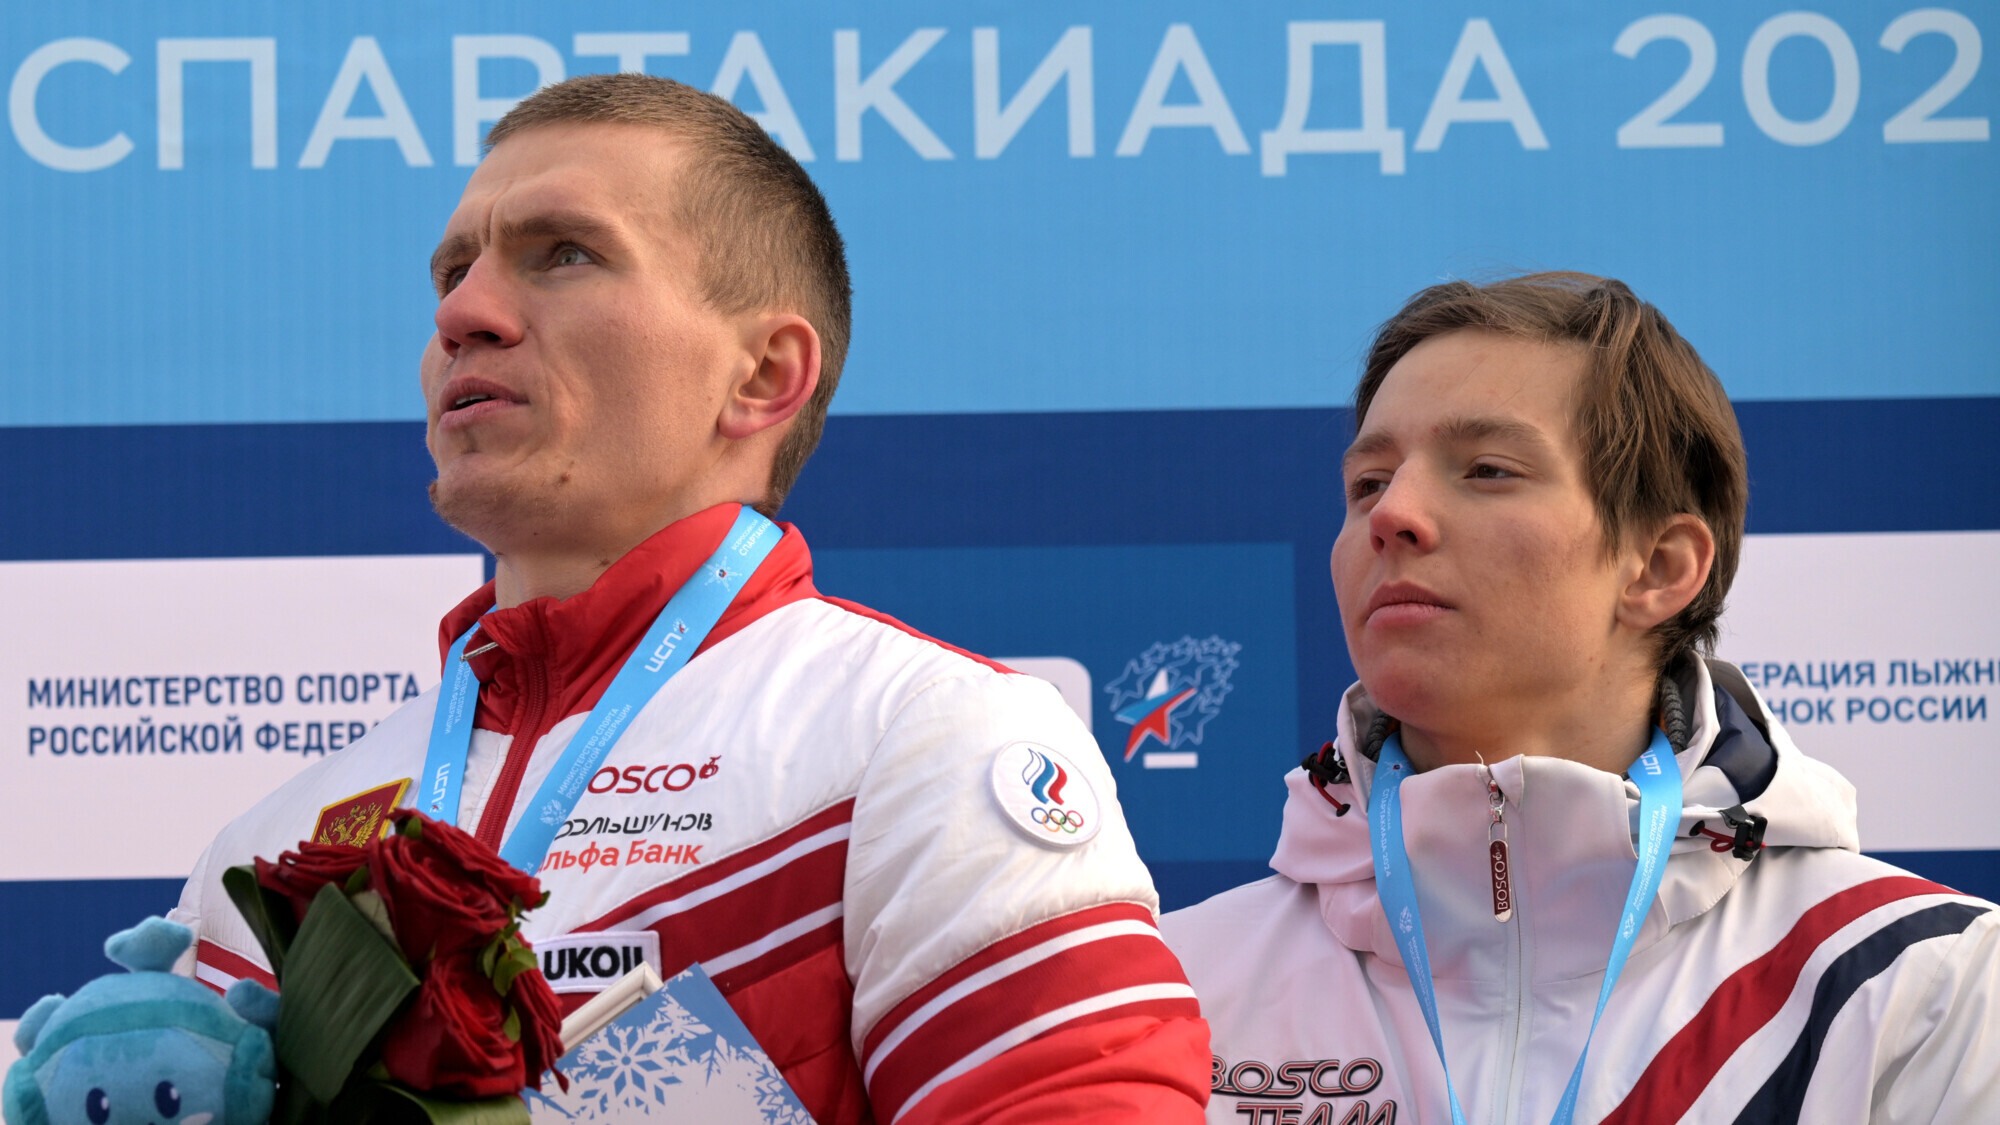 Лыжник Коростелёв заявил, что у него не опускаются руки от доминирования Большунова